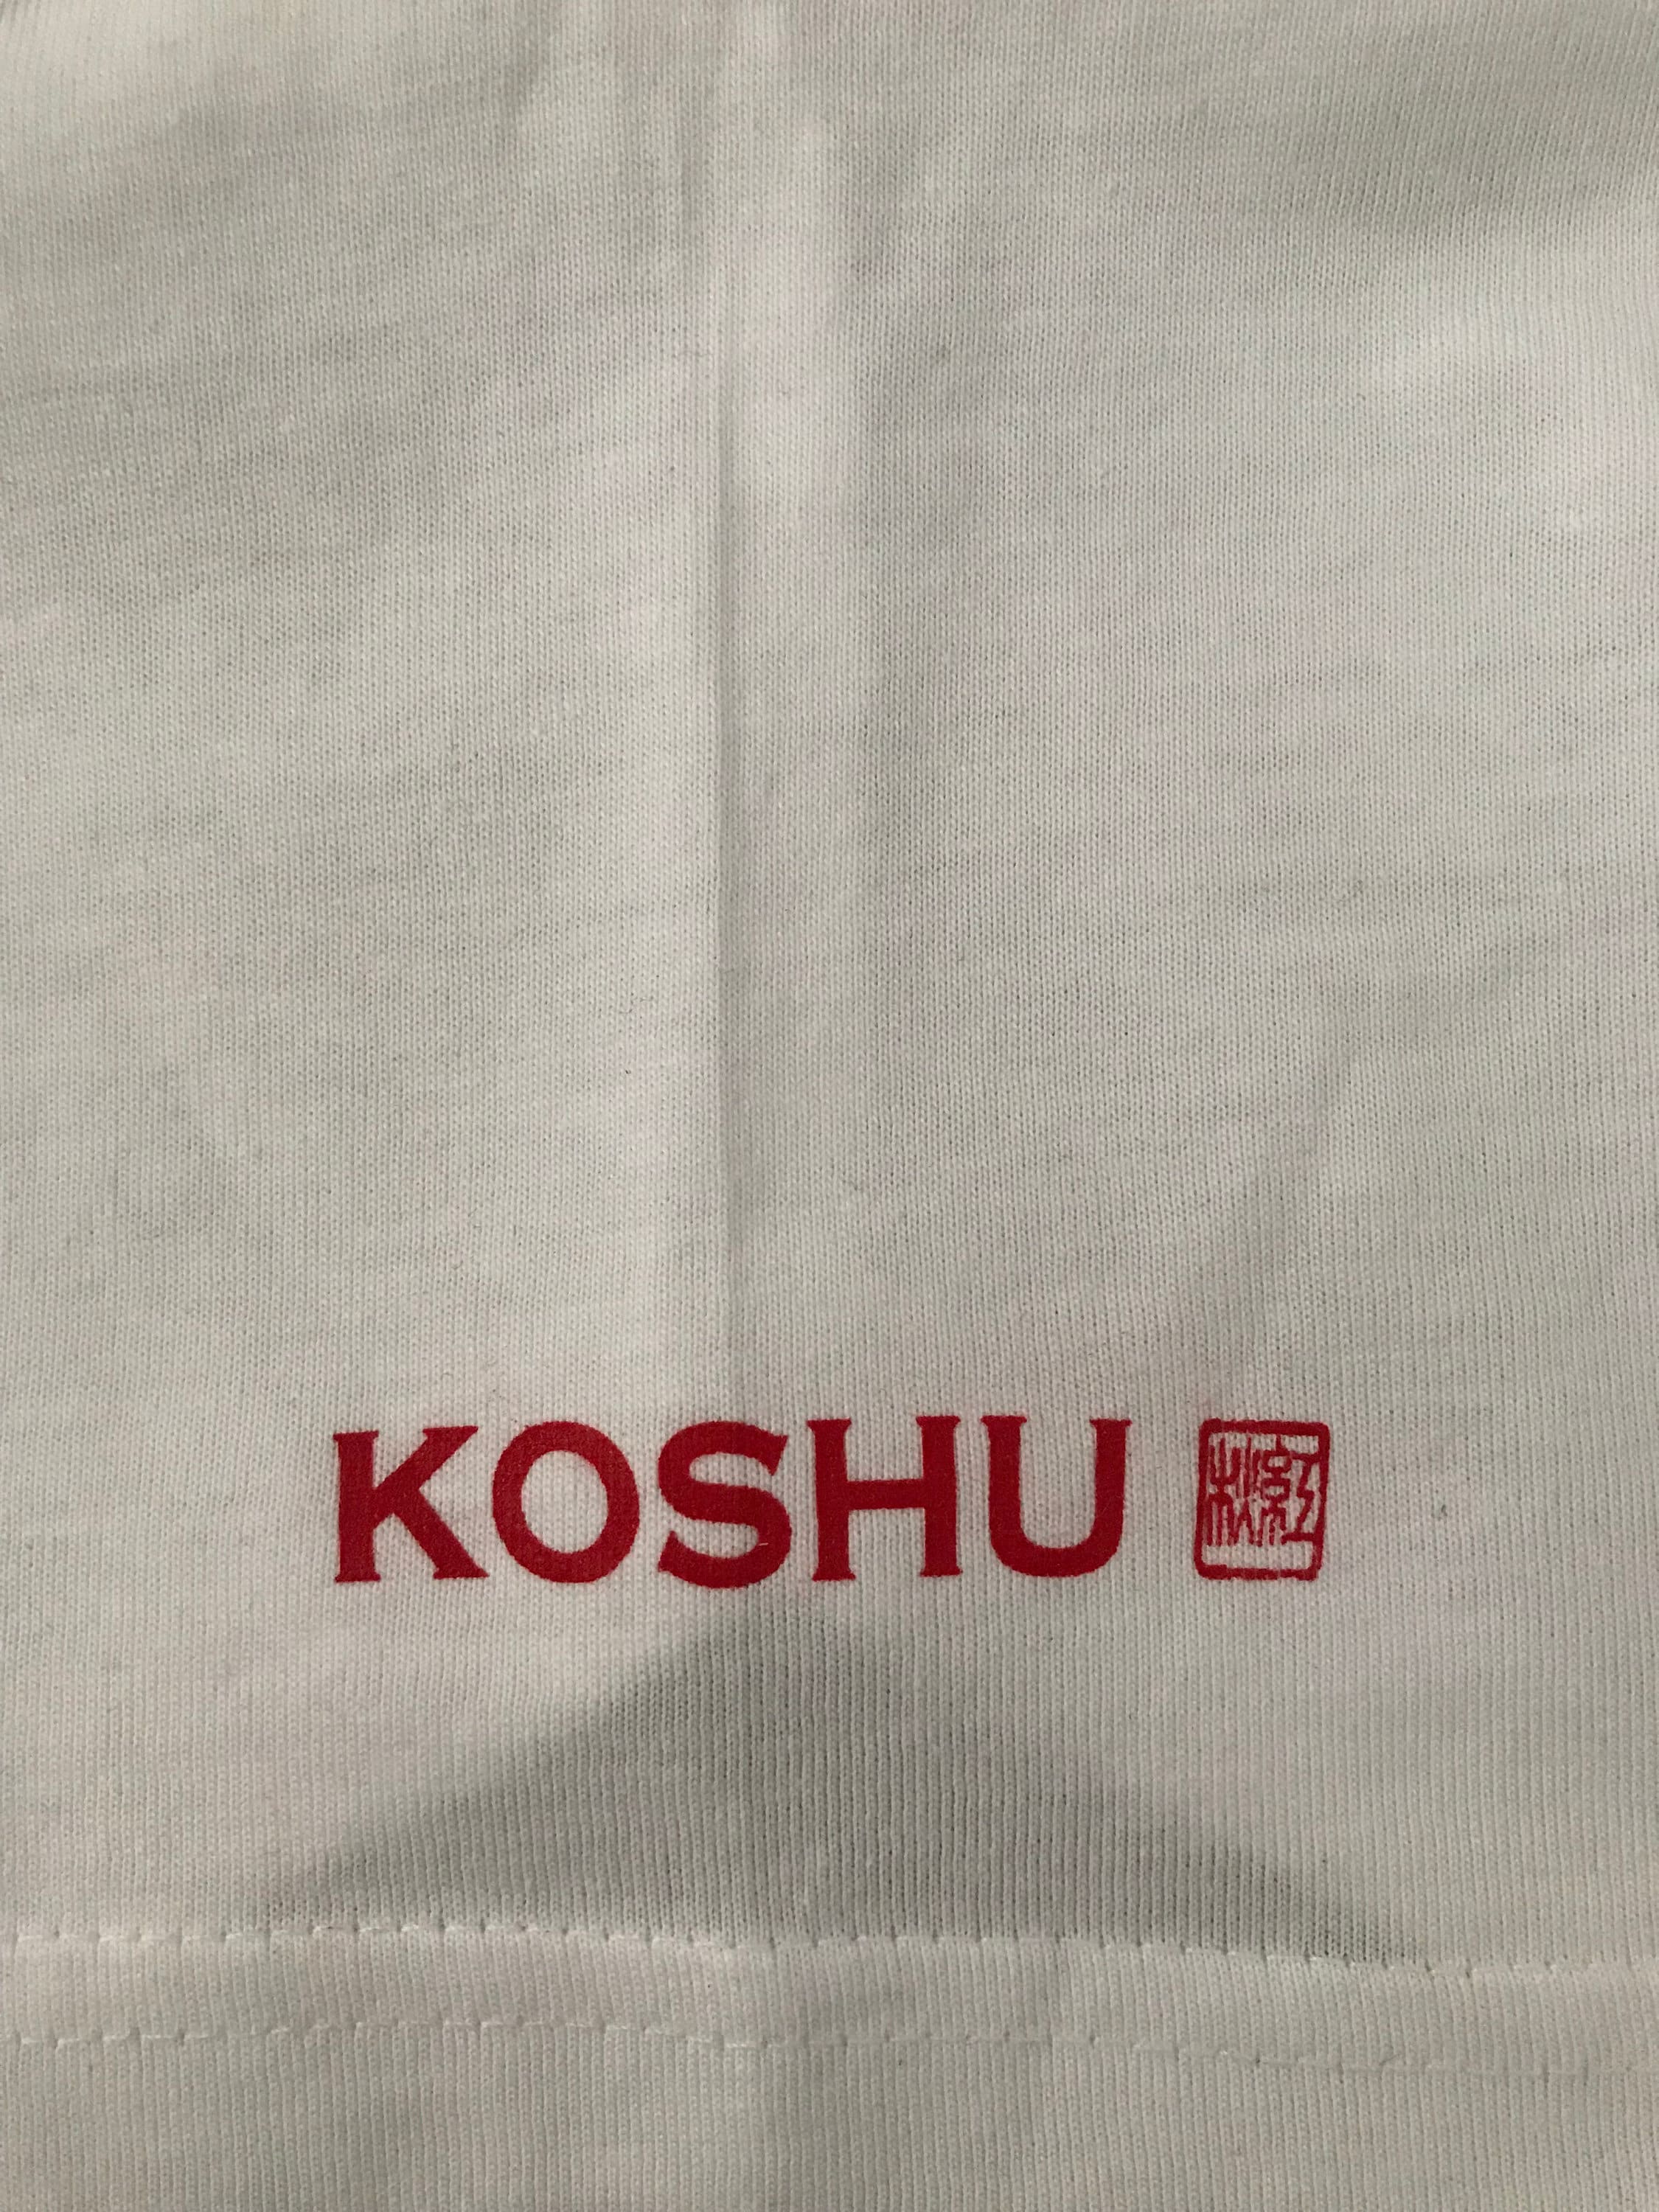 Stylish T-shirt unisex With Japanese Art by Koshu qi | Etsy